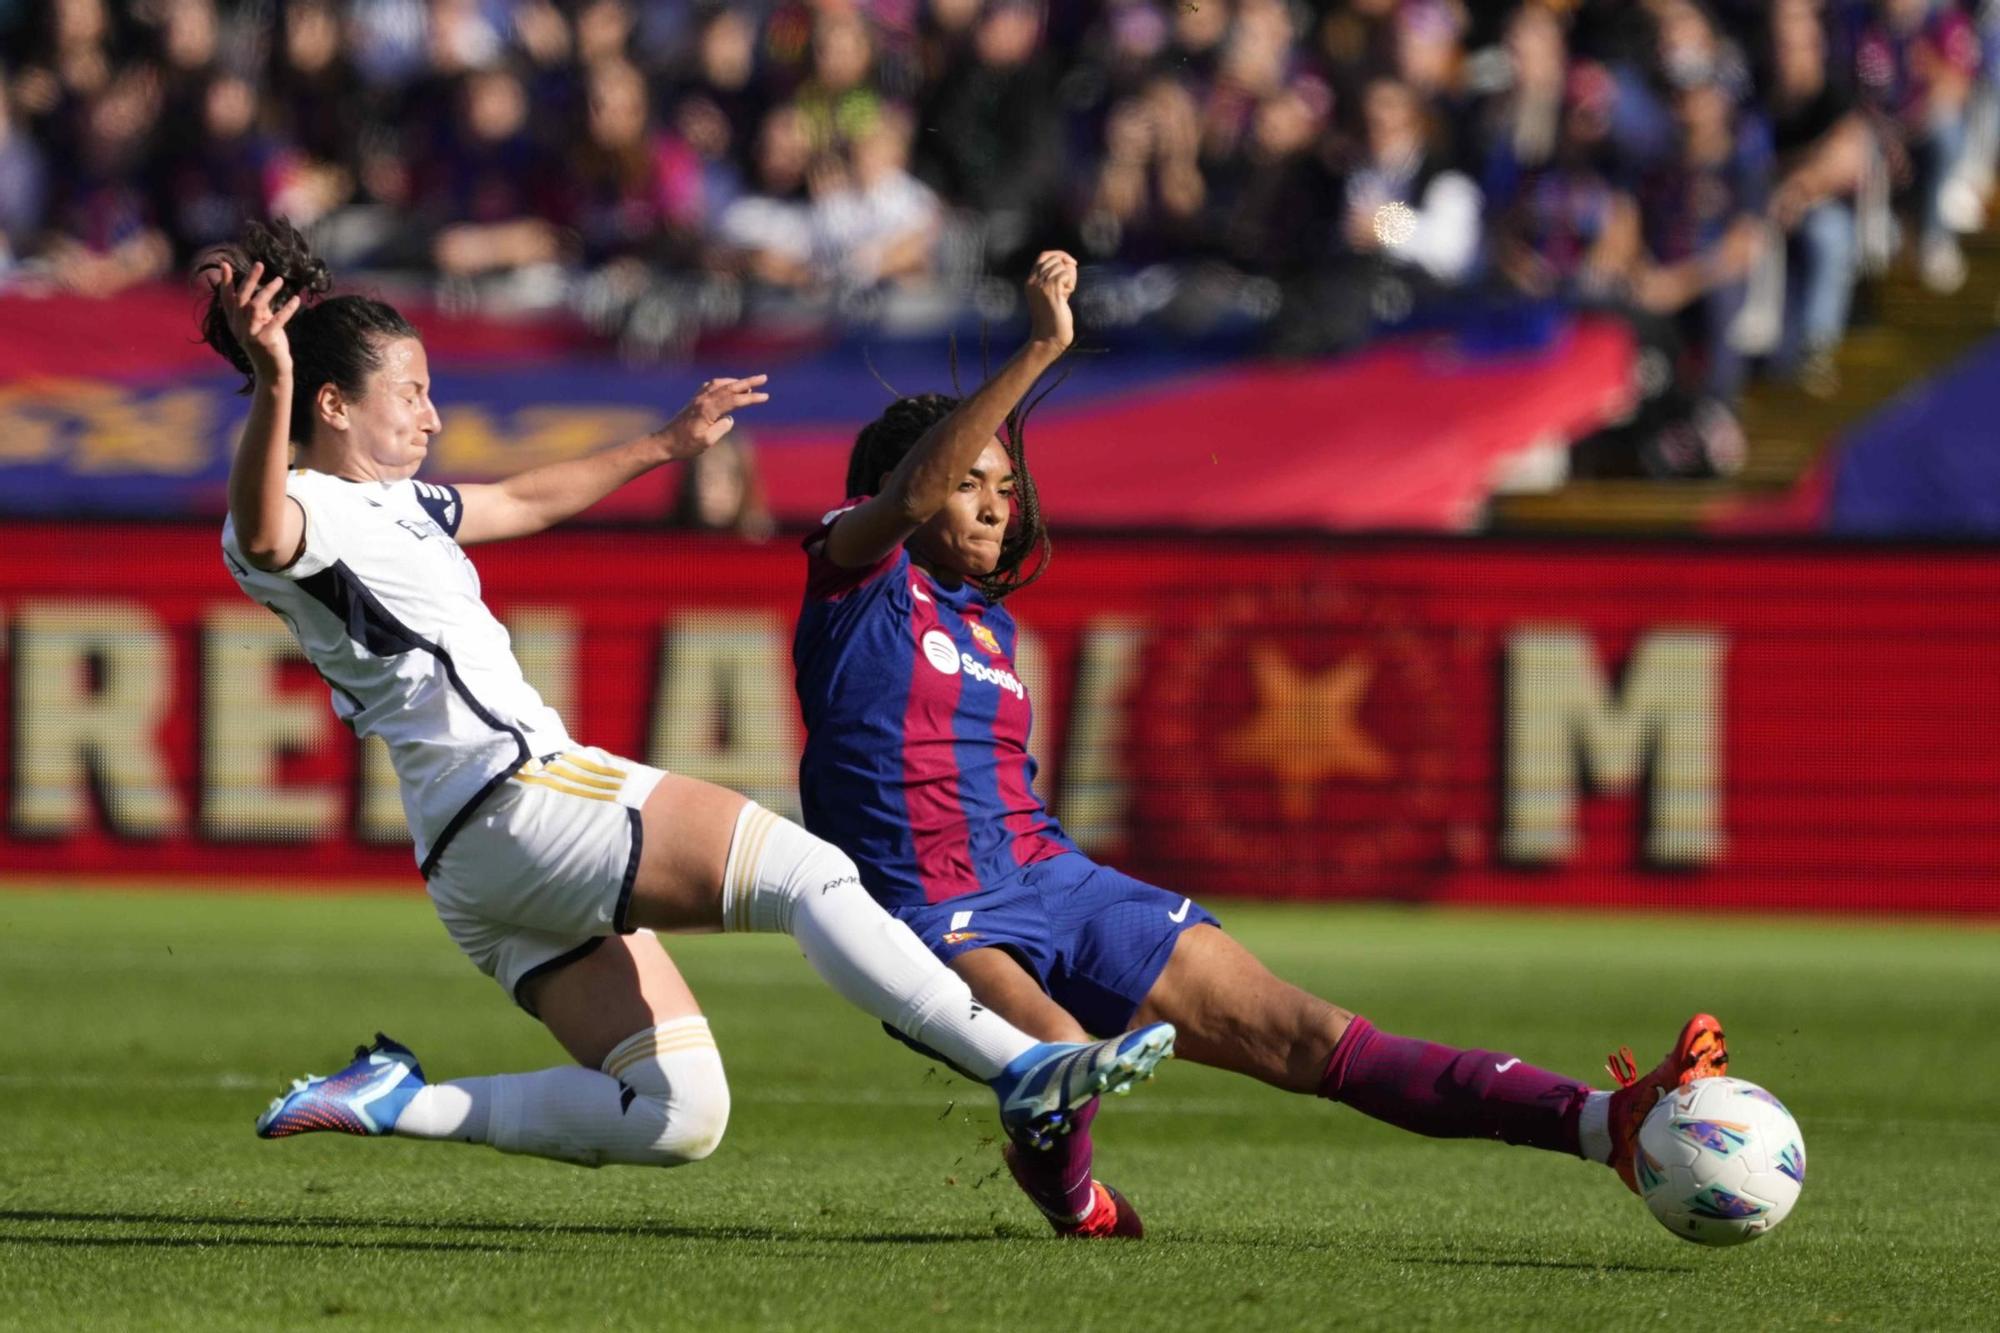 Les imatges del Barcelona - Reial Madrid de la lliga femenina